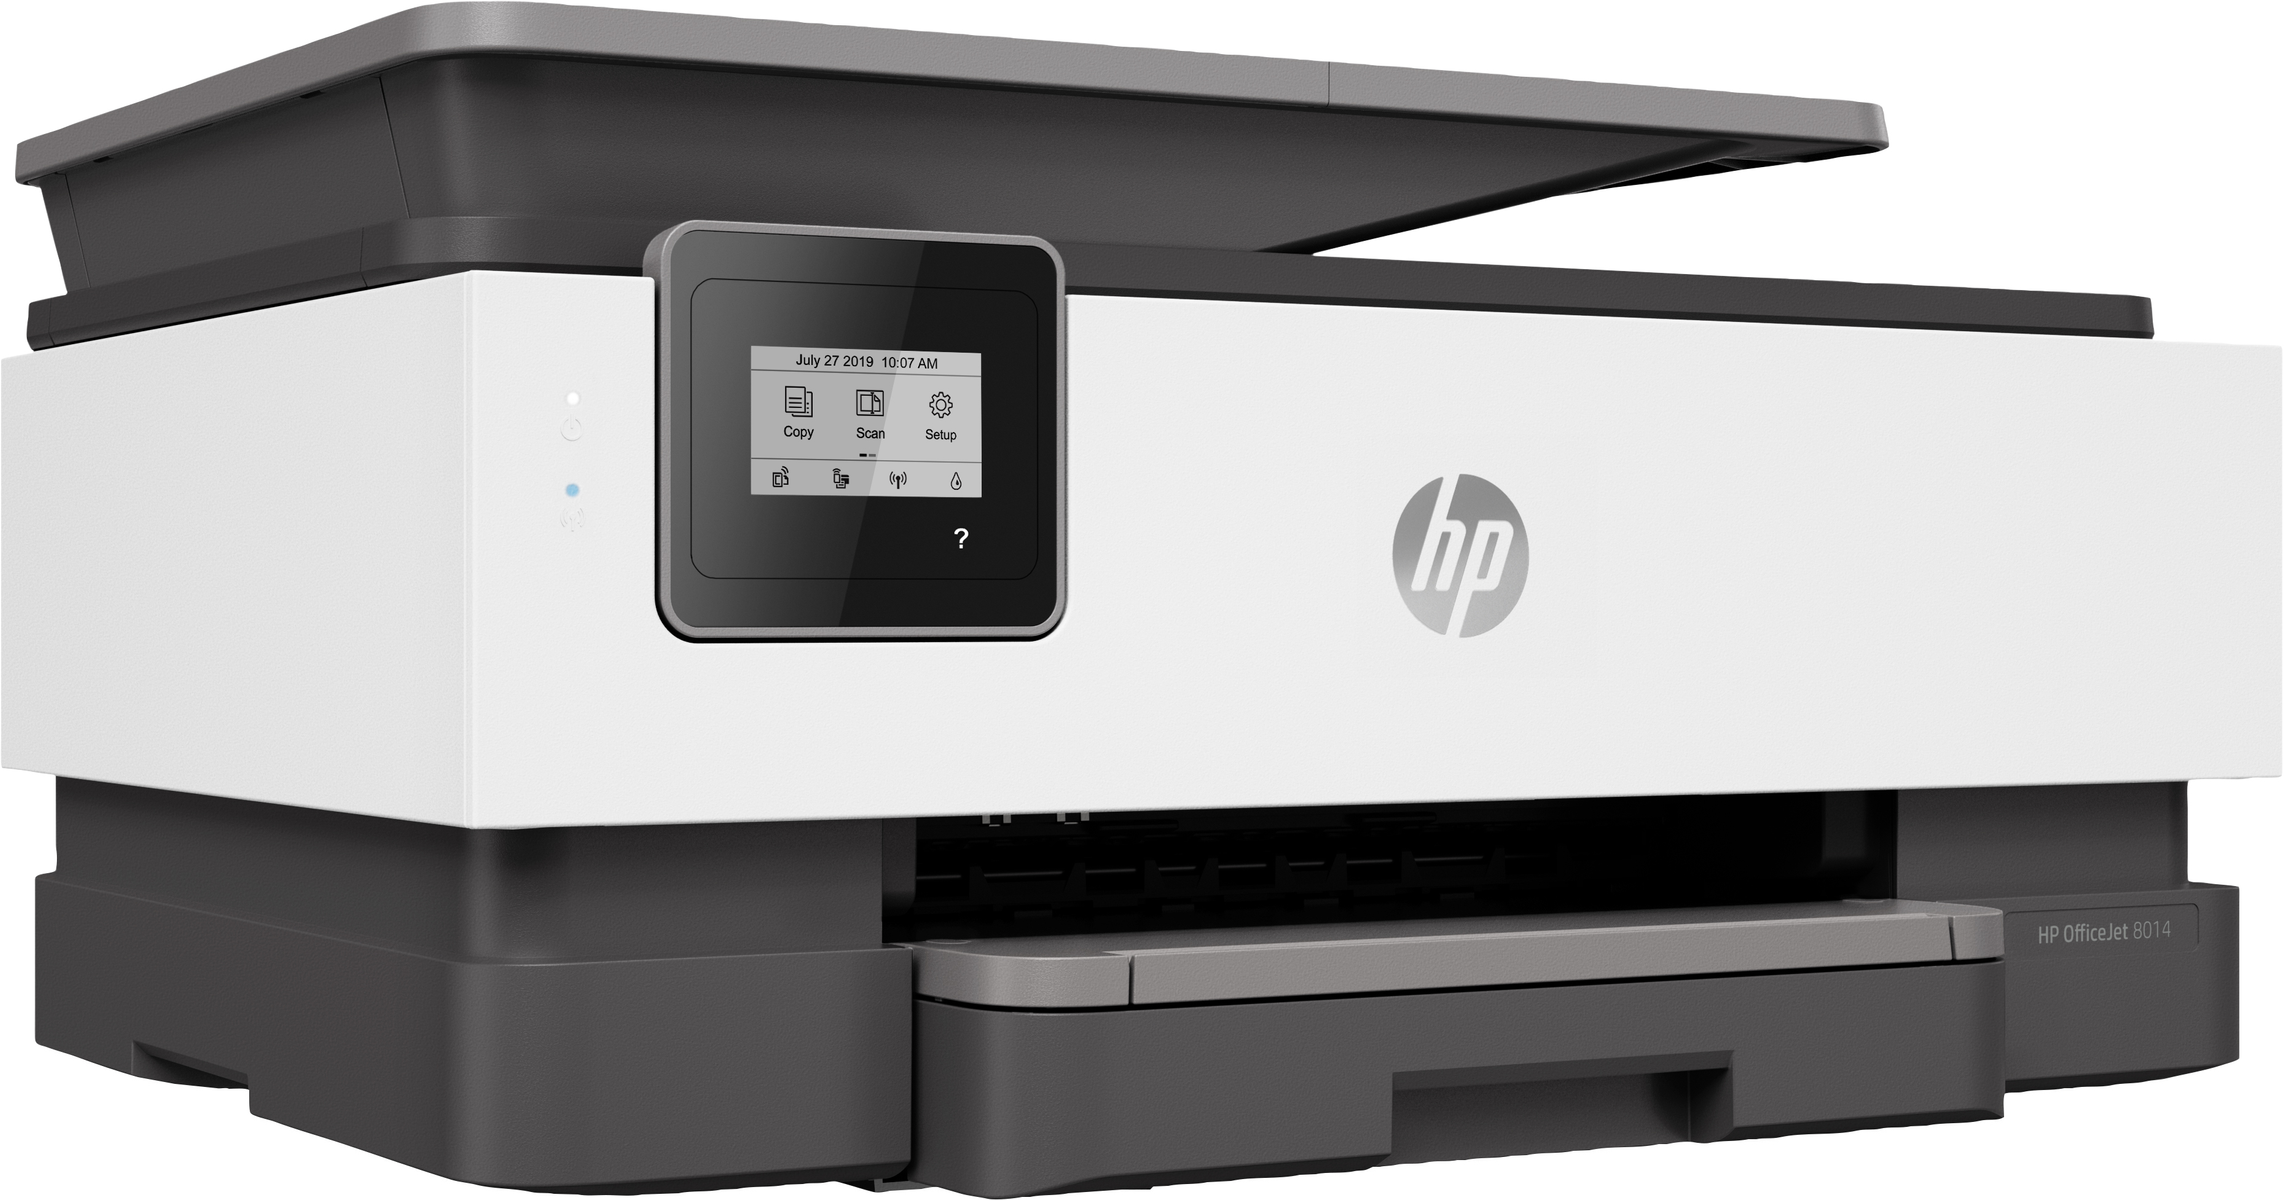 HP OFFICEJET Thermal ALL-IN-ONE Multifunktionsdrucker WLAN 8014 Inkjet